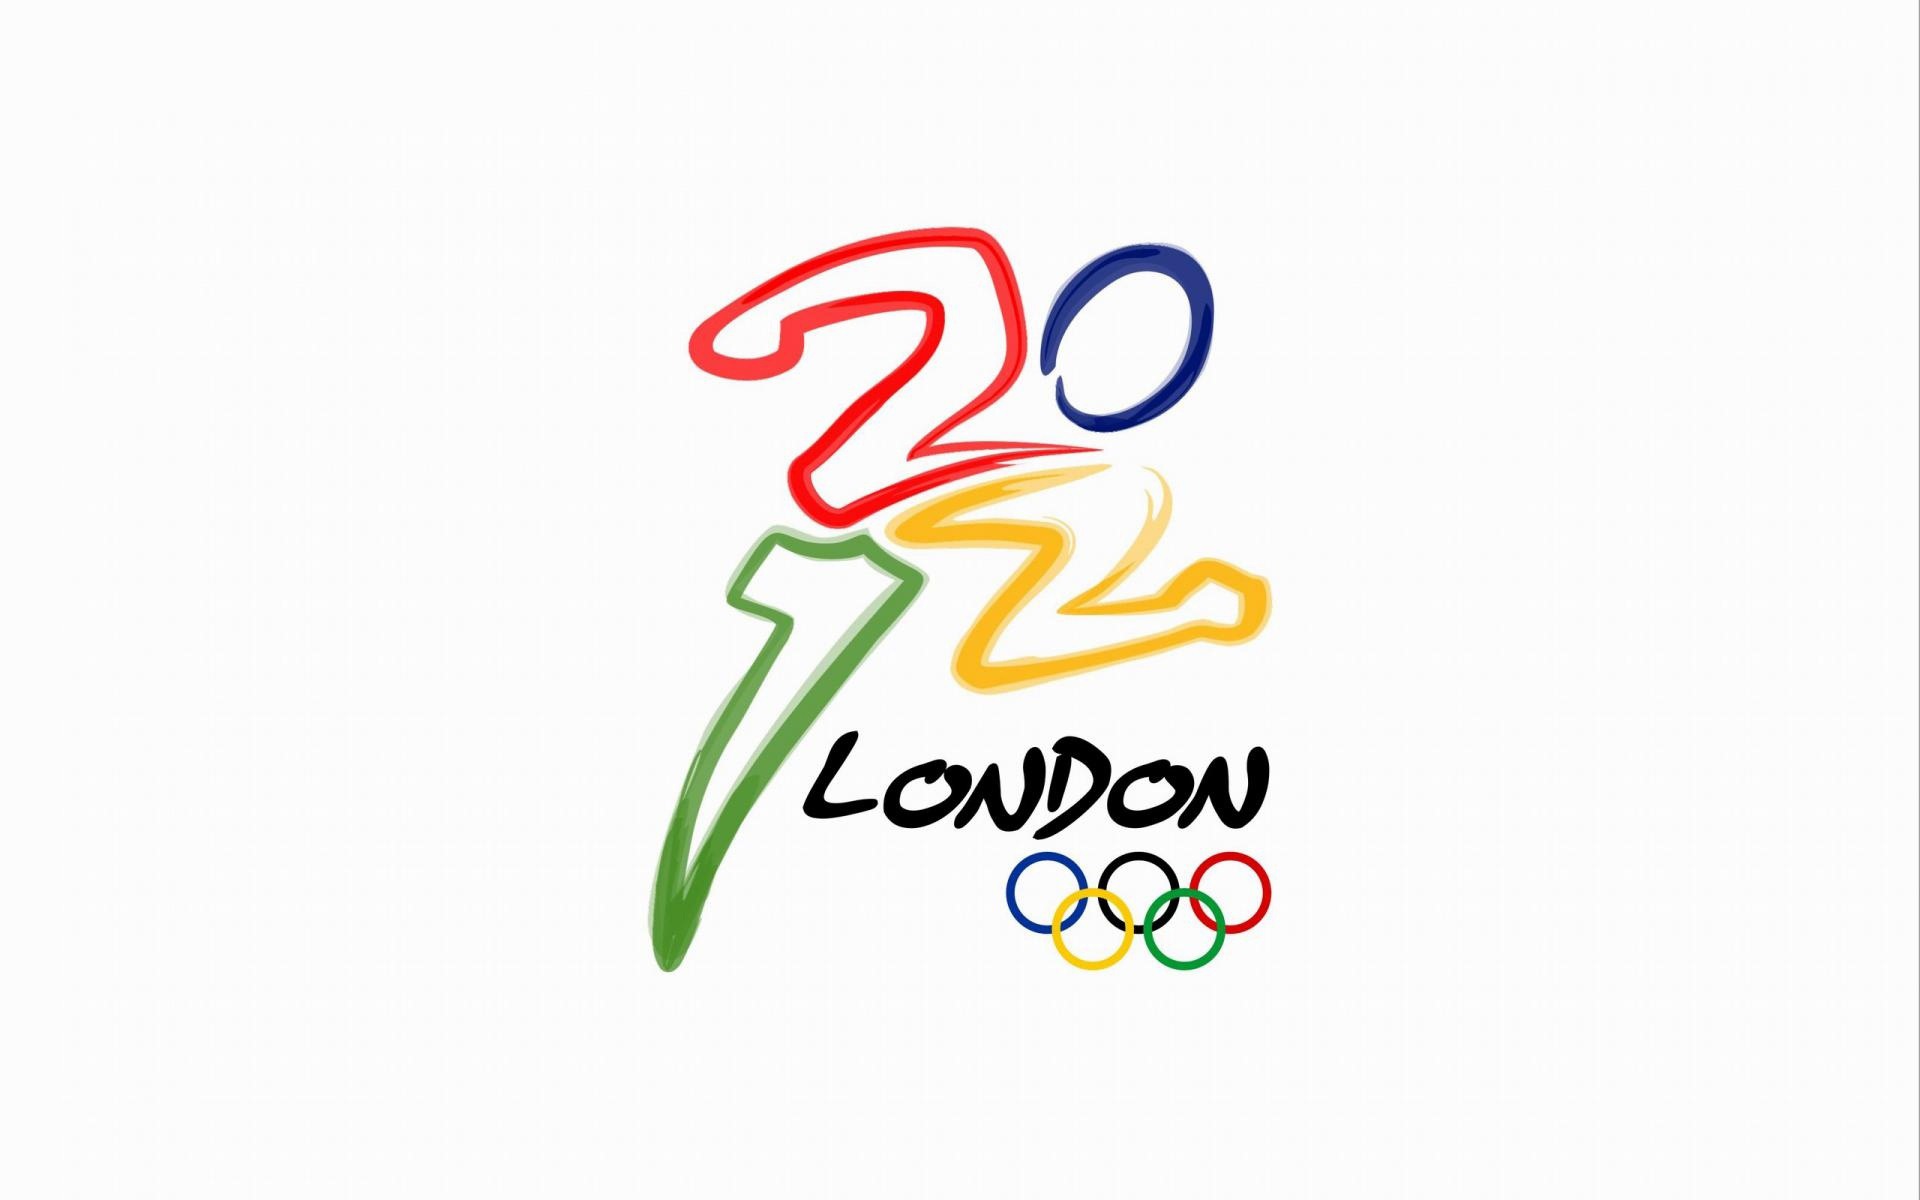 Londres 2012 Olimpiadas fondos temáticos (2) #22 - 1920x1200